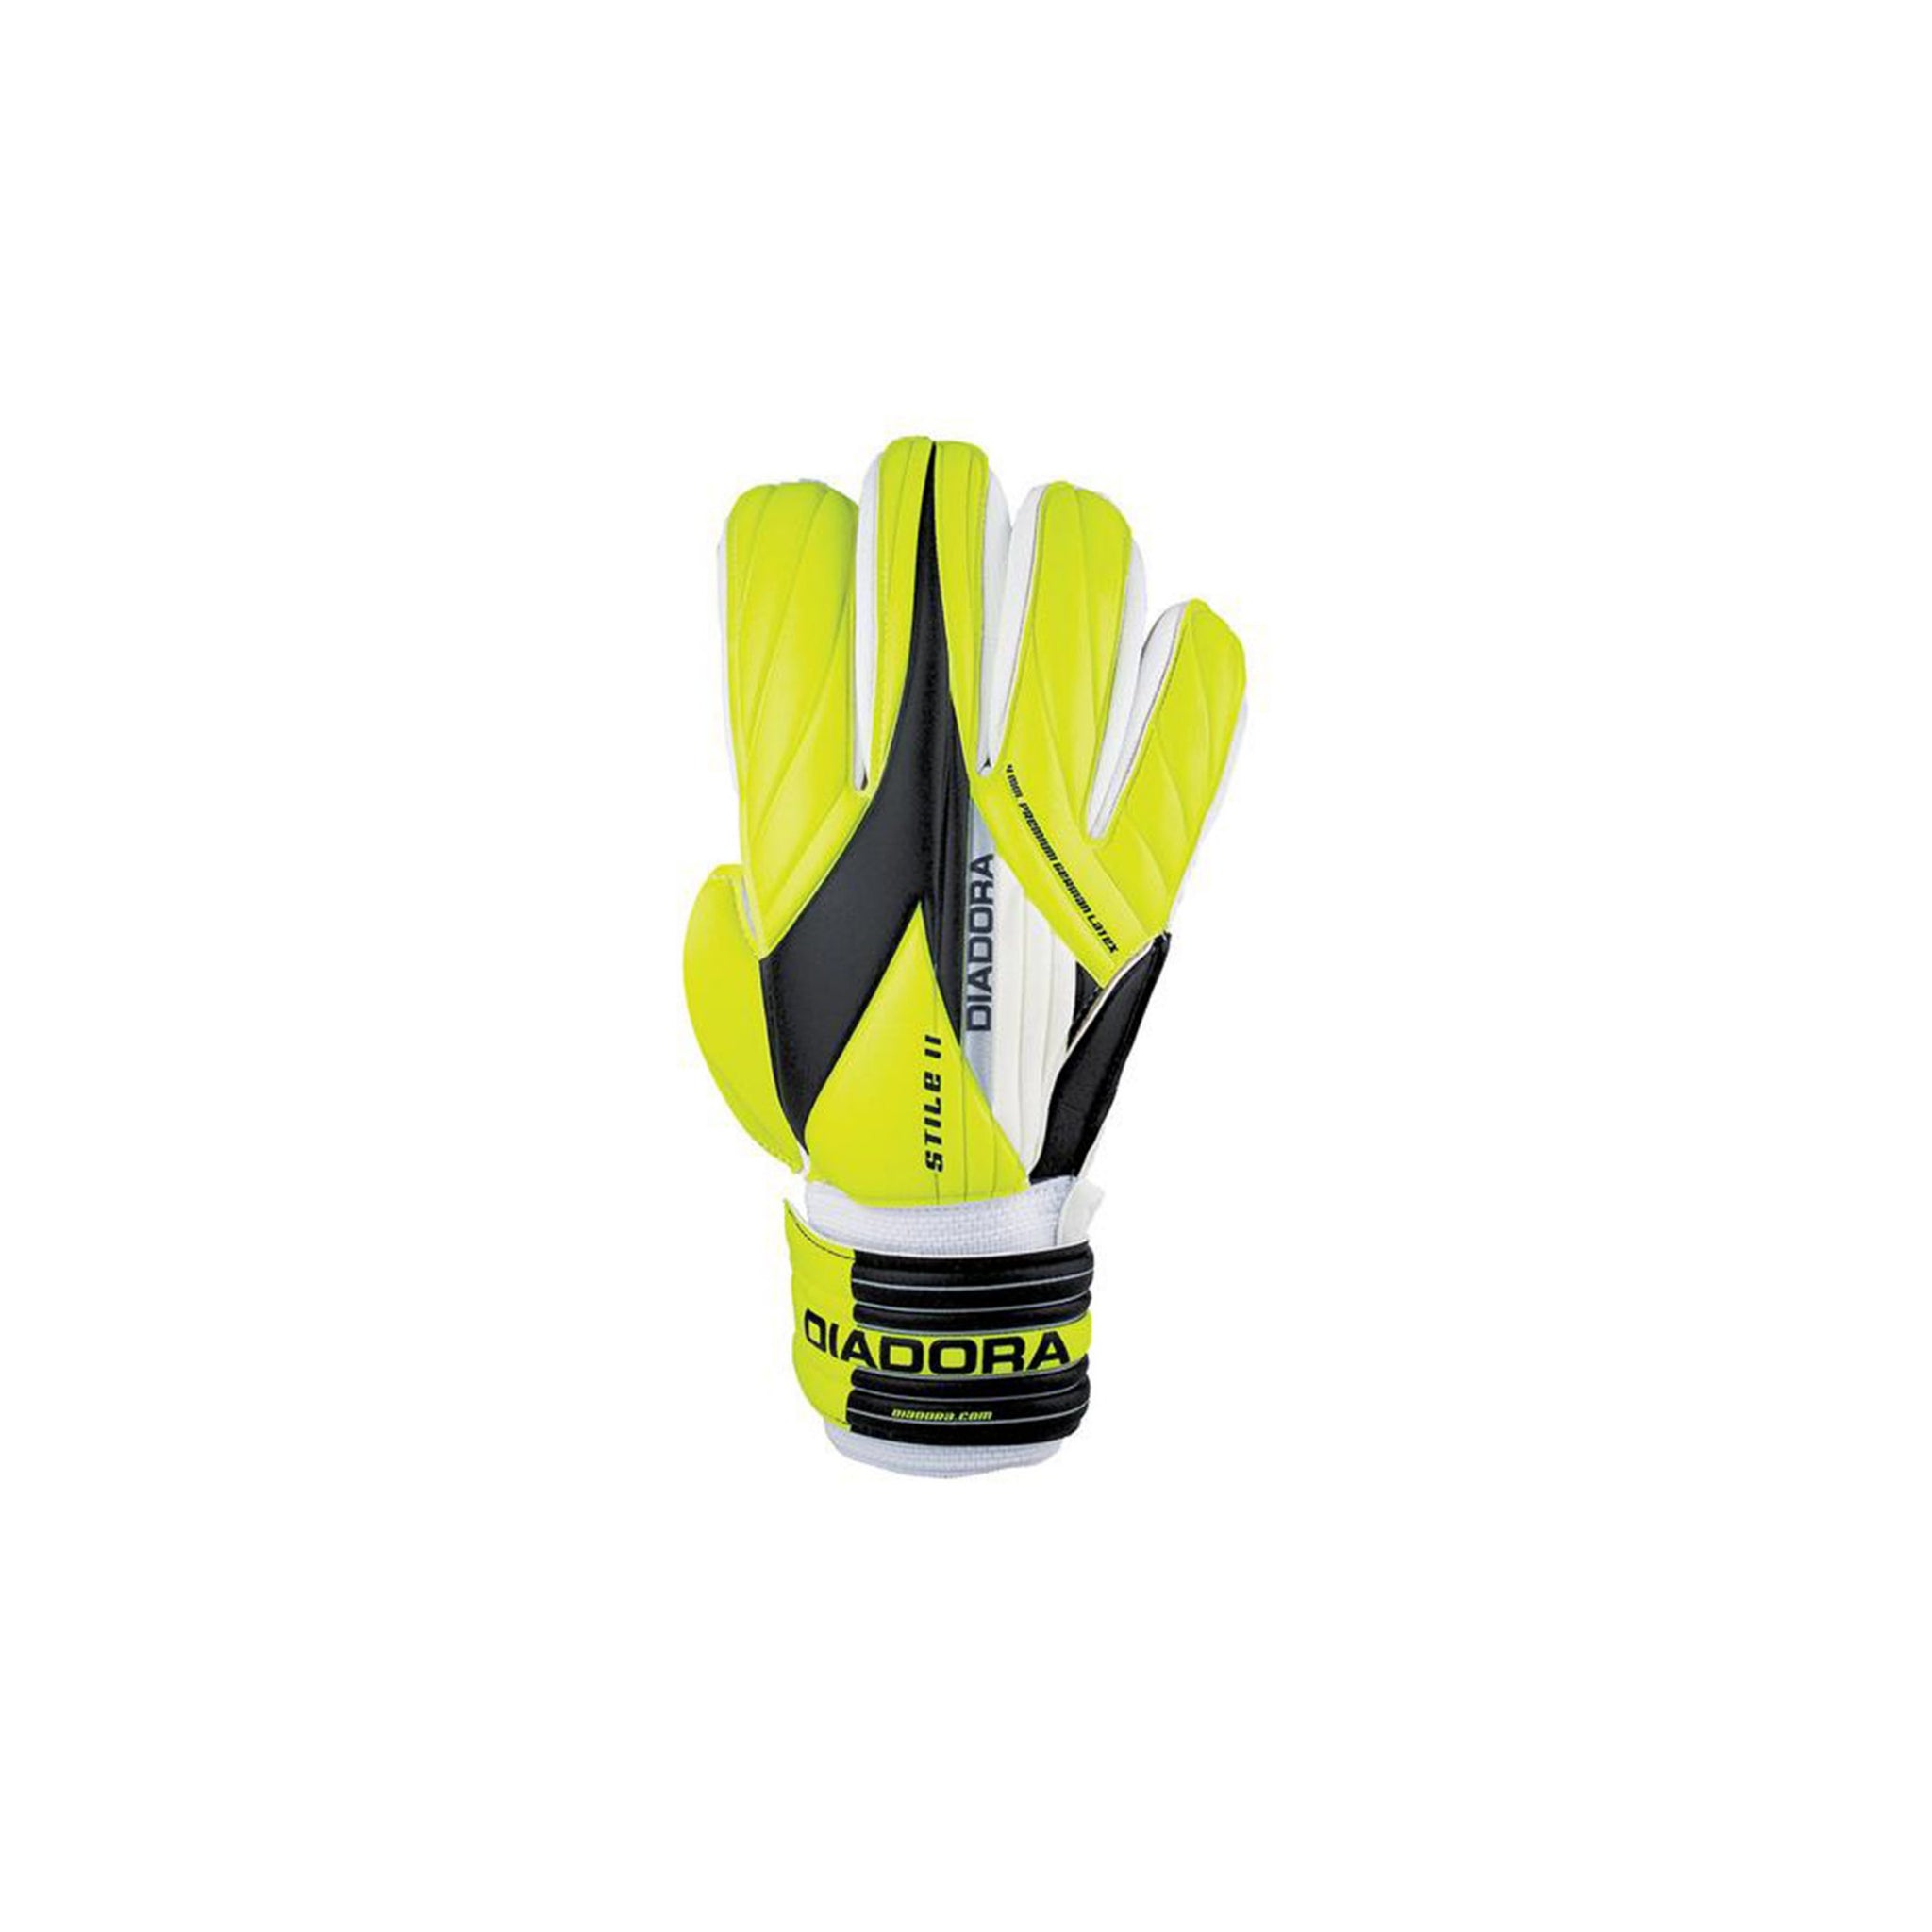 DIADORA Babel Glove